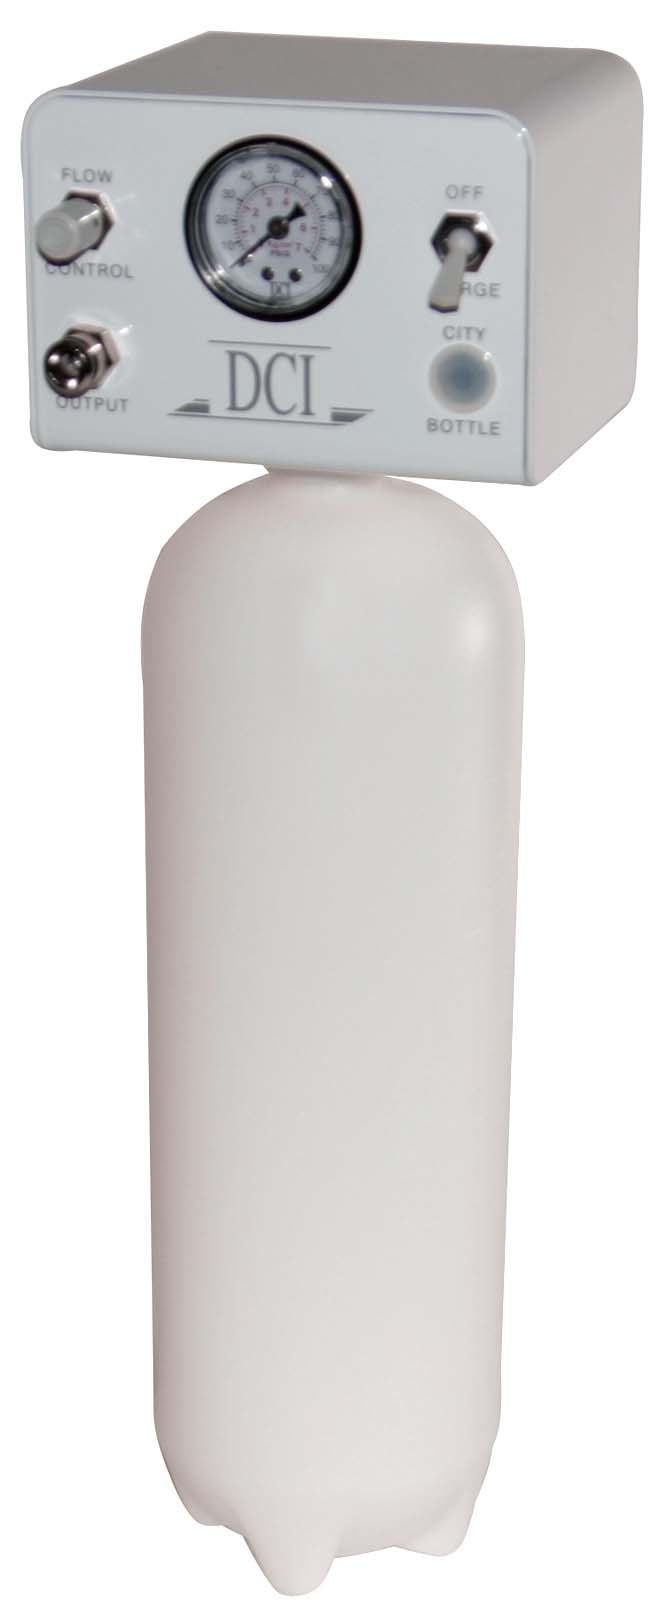 DCI Deluxe Single Bottle Clean Water System (Bottle Water)